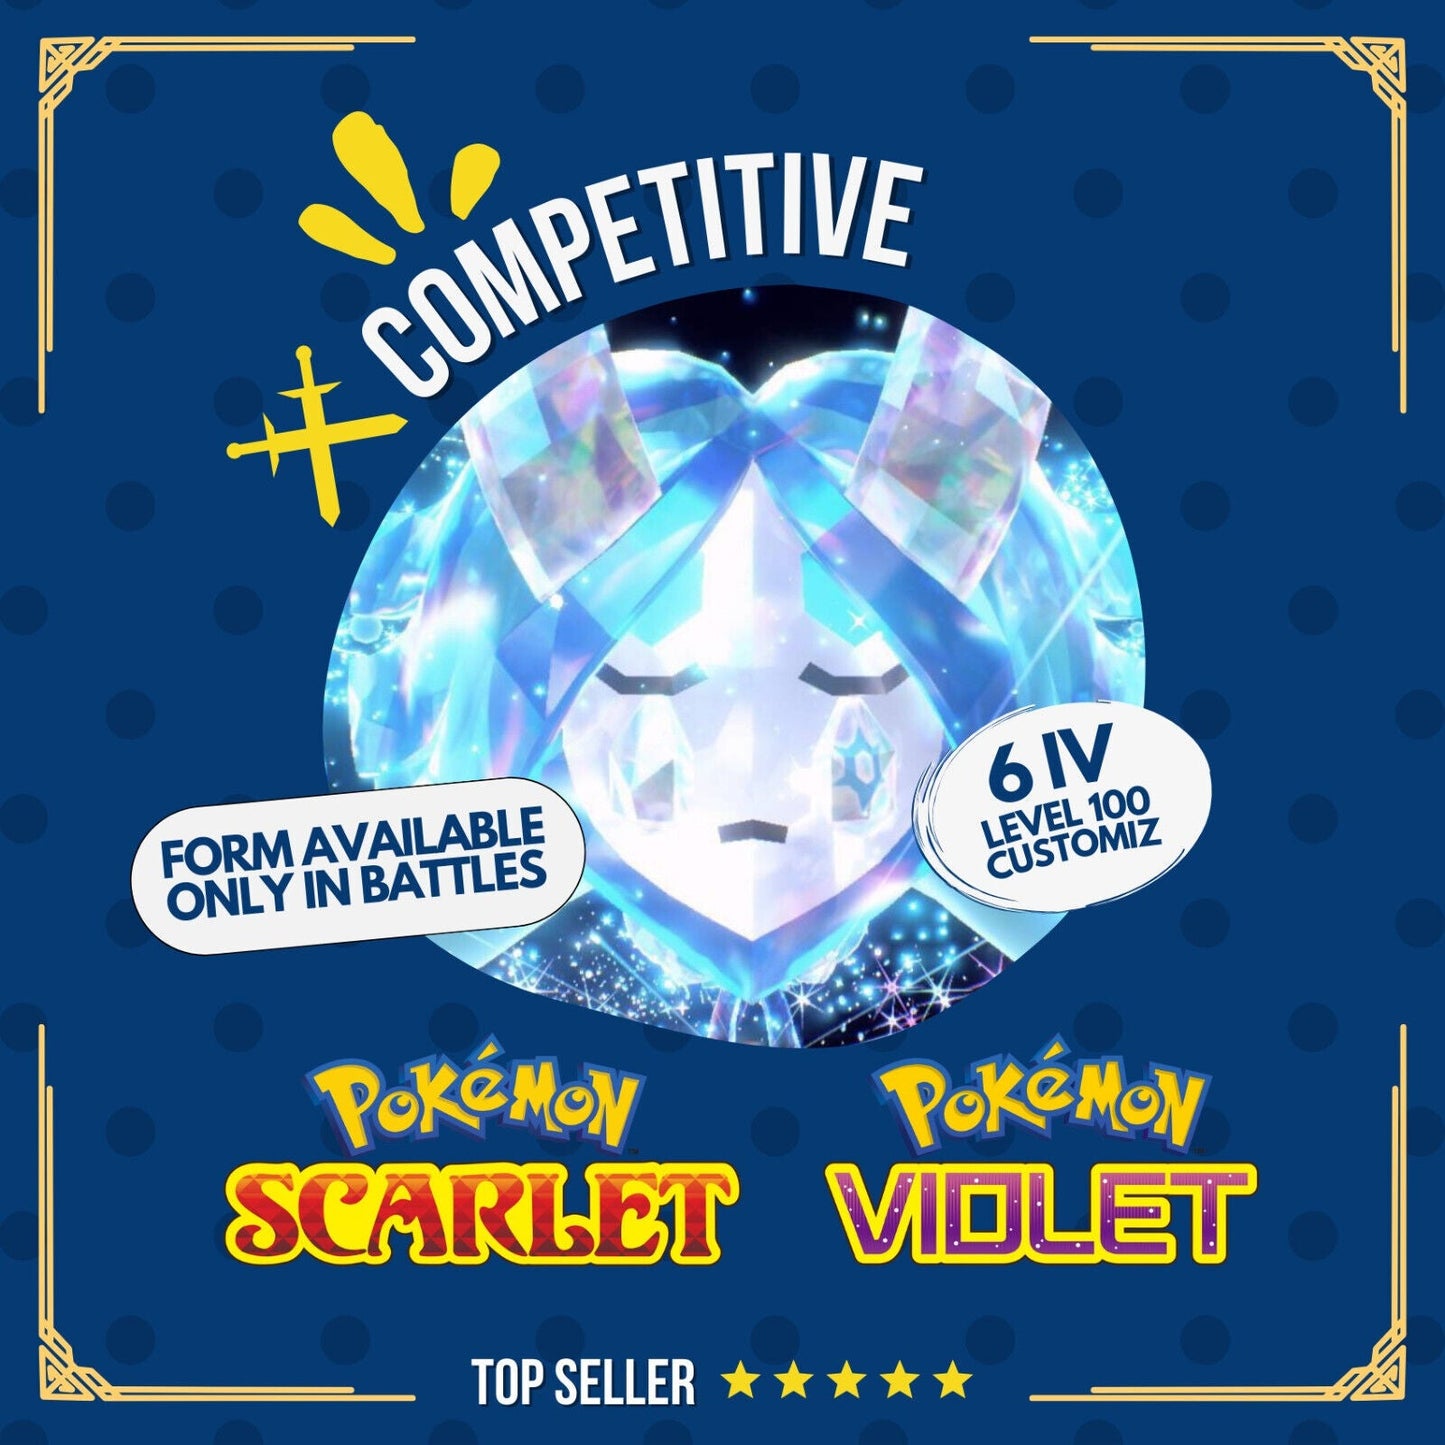 Ogerpon Water Wellspring Mask Blue 6 IV 100 Competitive Pokémon Scarlet Violet by Shiny Living Dex | Shiny Living Dex